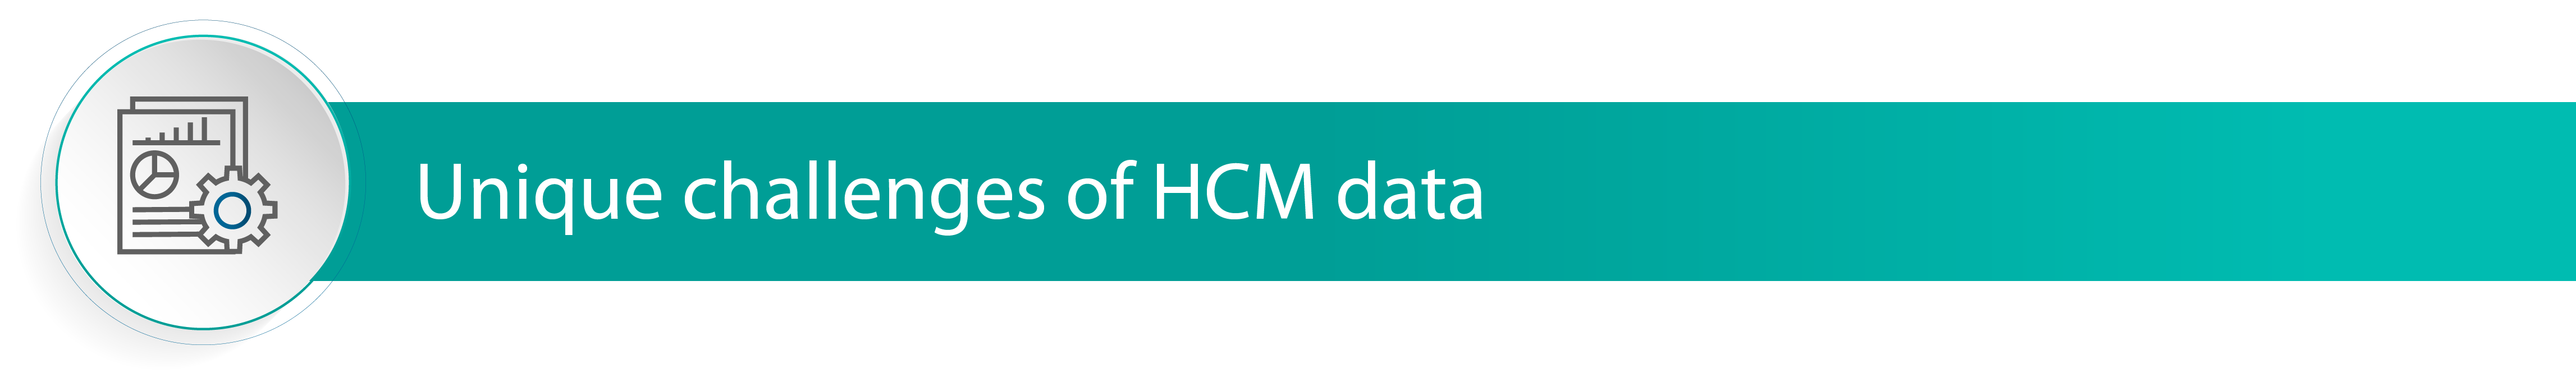 Unique challenges of HCM data